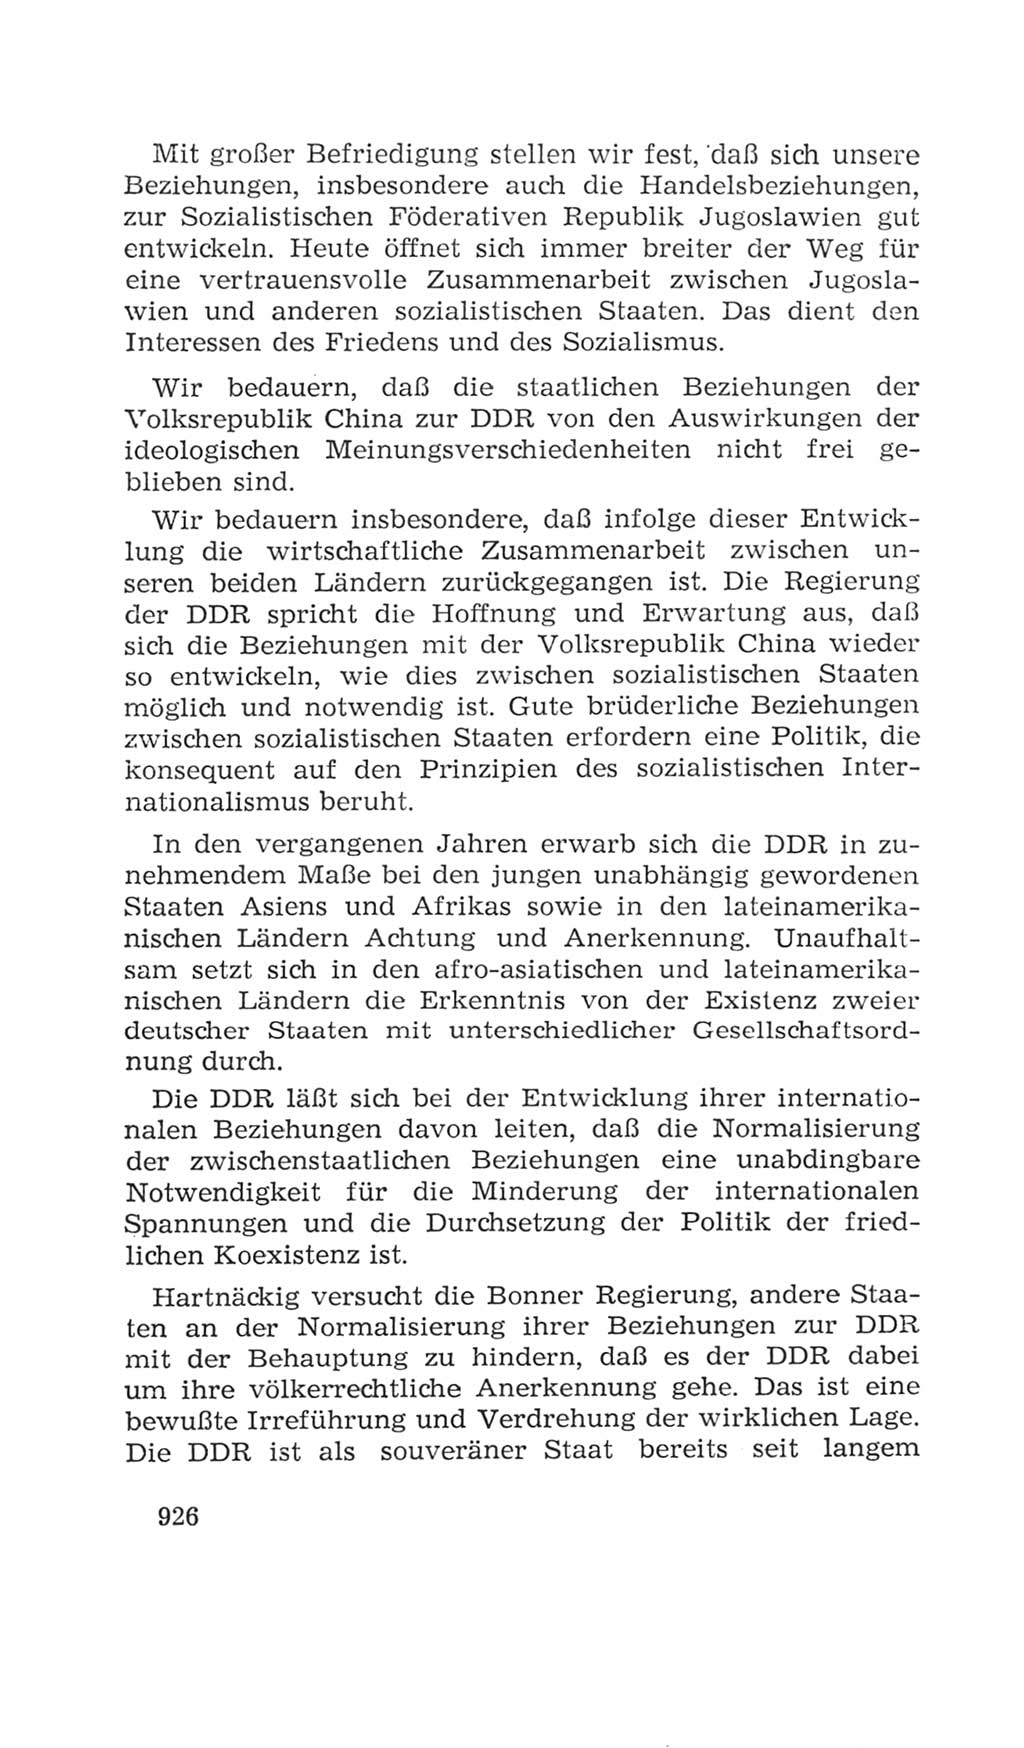 Volkskammer (VK) der Deutschen Demokratischen Republik (DDR), 4. Wahlperiode 1963-1967, Seite 926 (VK. DDR 4. WP. 1963-1967, S. 926)